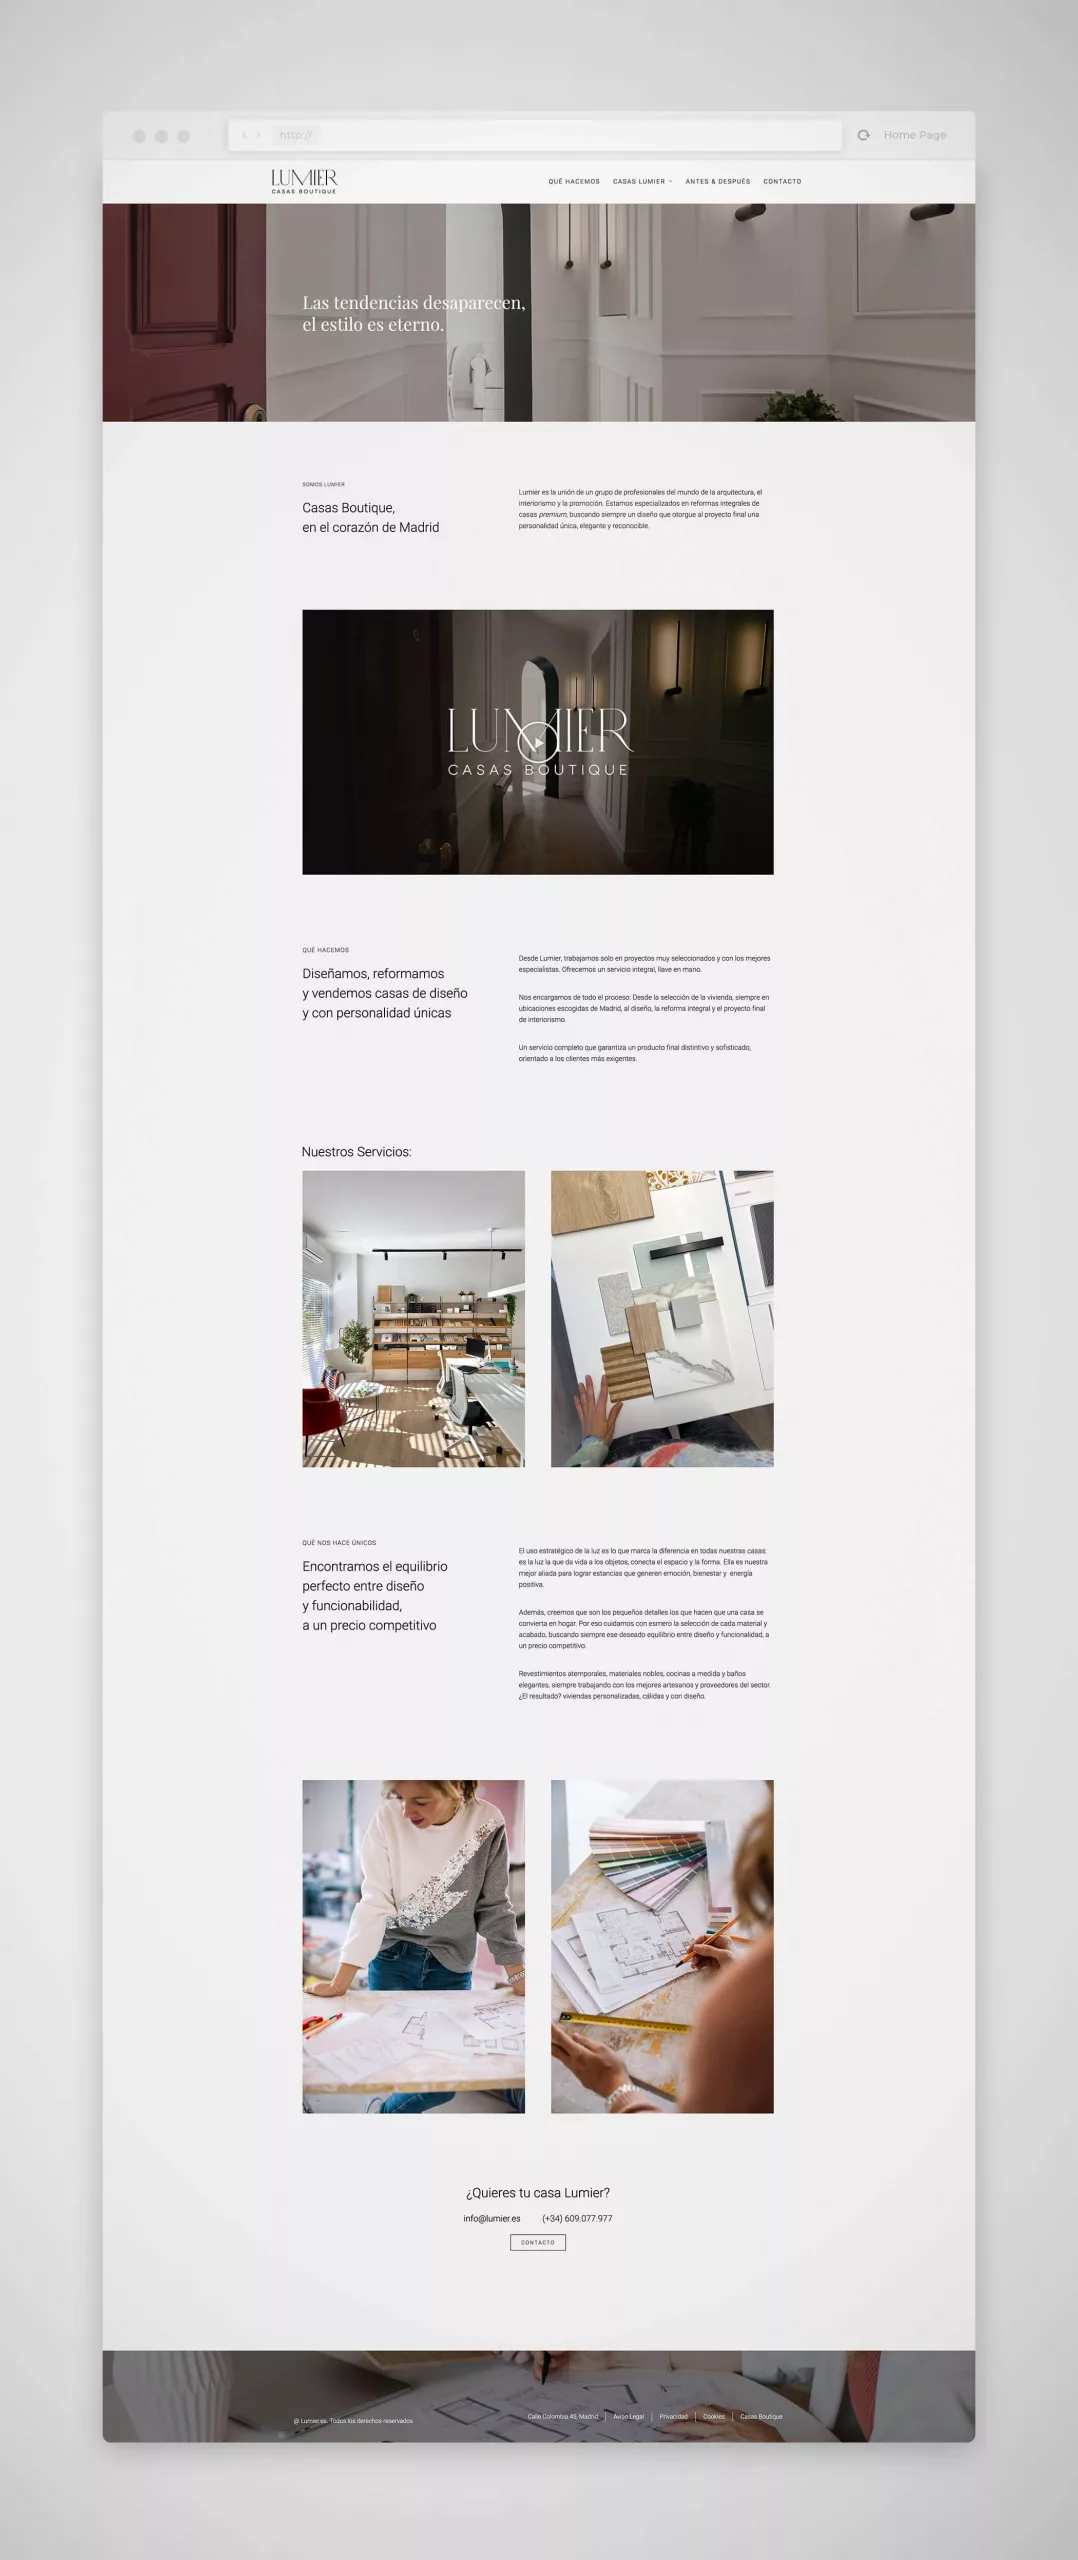 Diseño páginas web Madrid, Lumier casas boutique